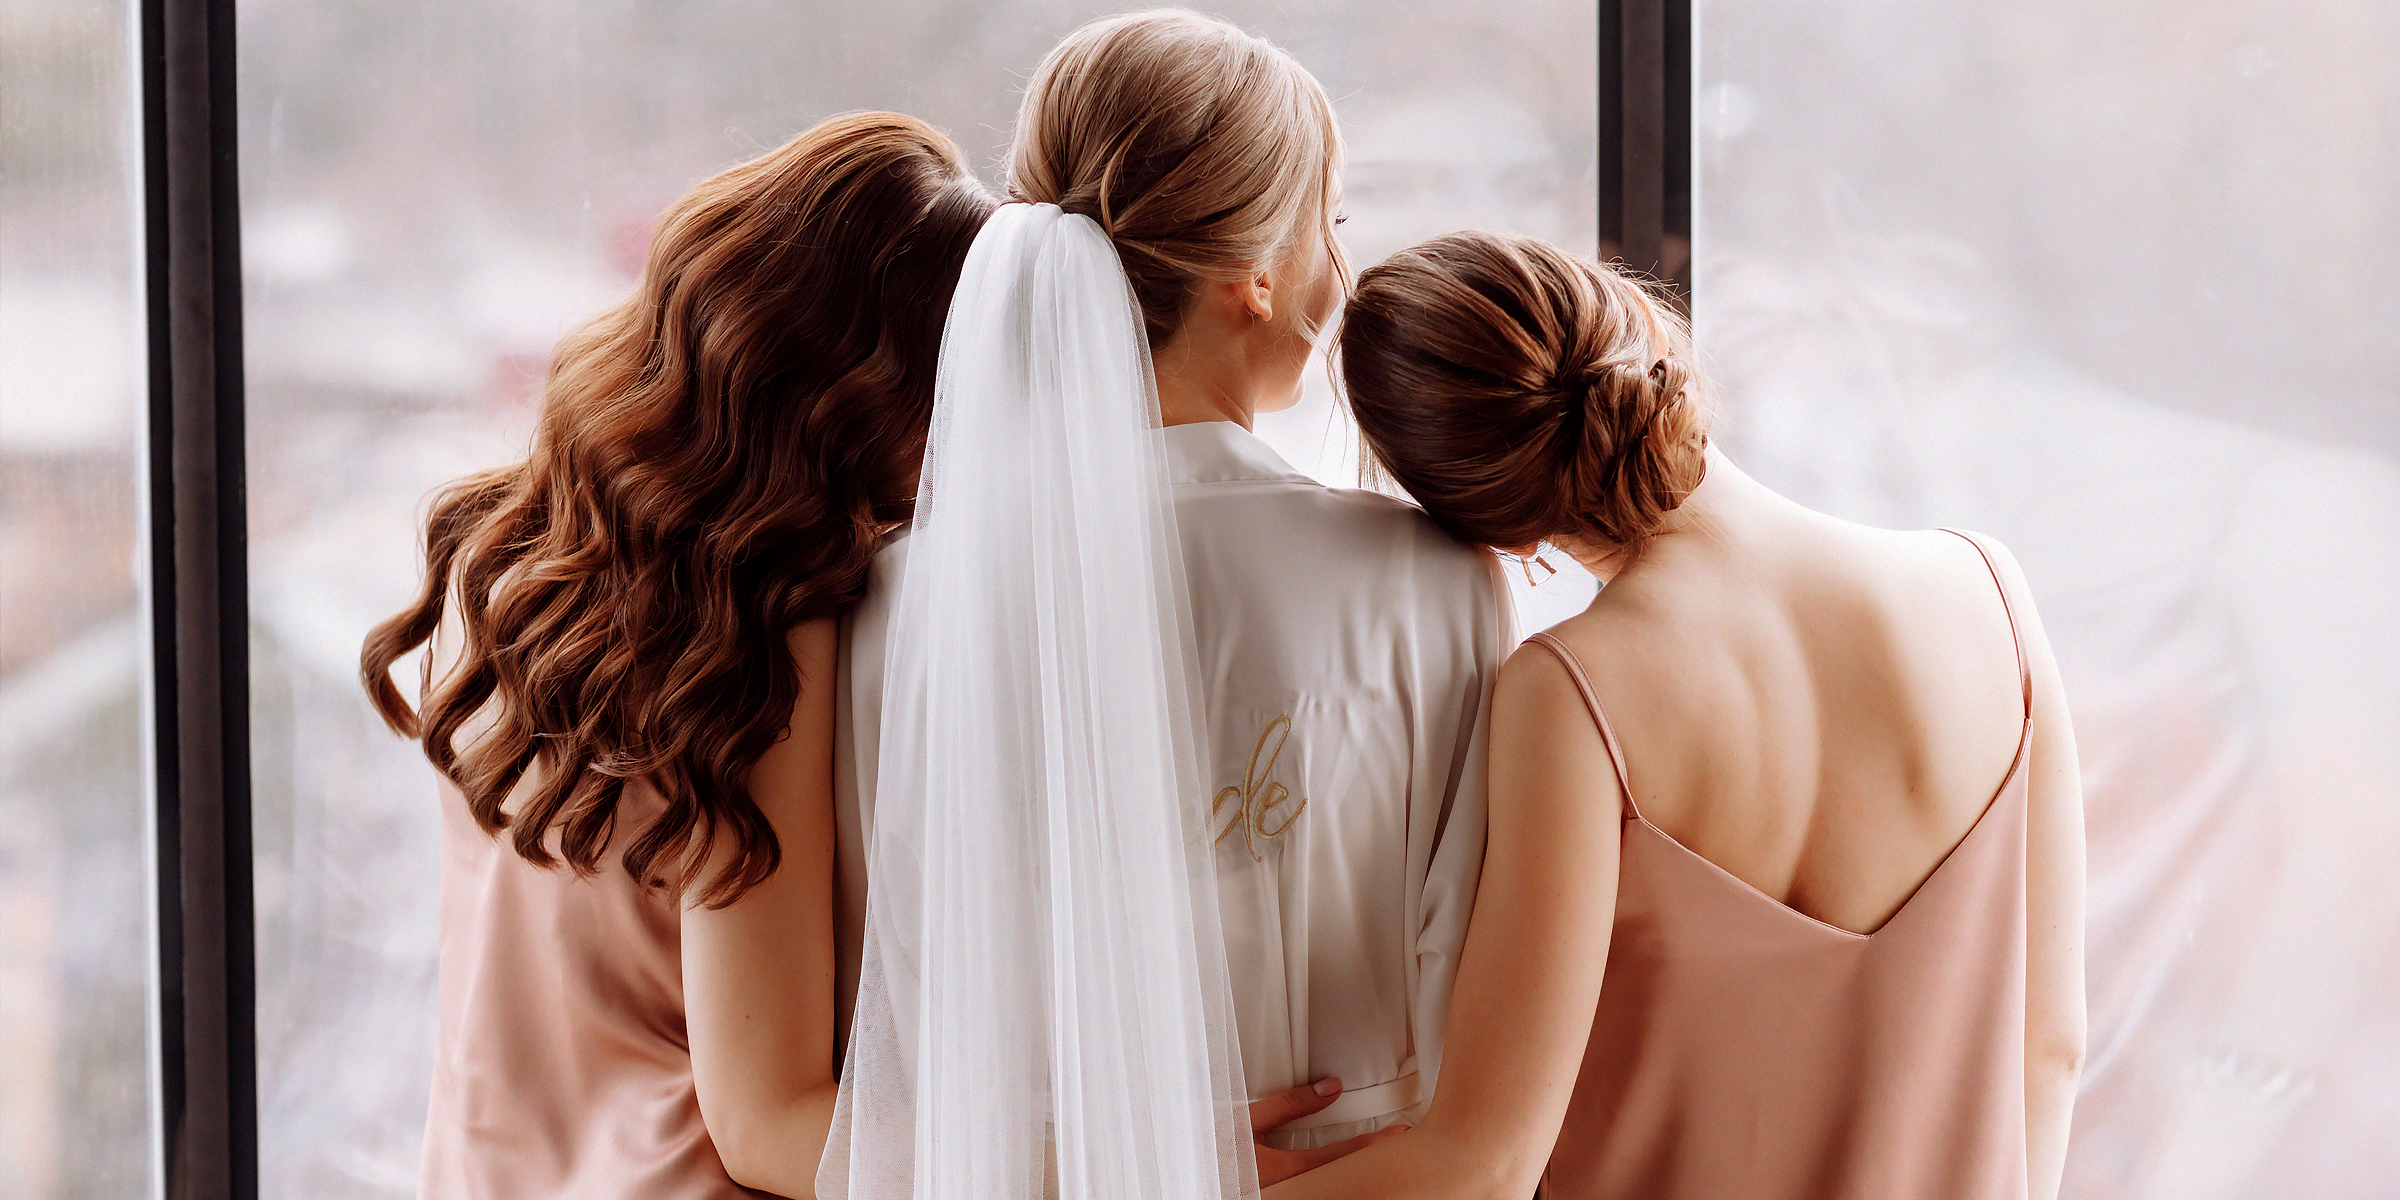 Bride hugging her bridesmaids. | Source: Shutterstock